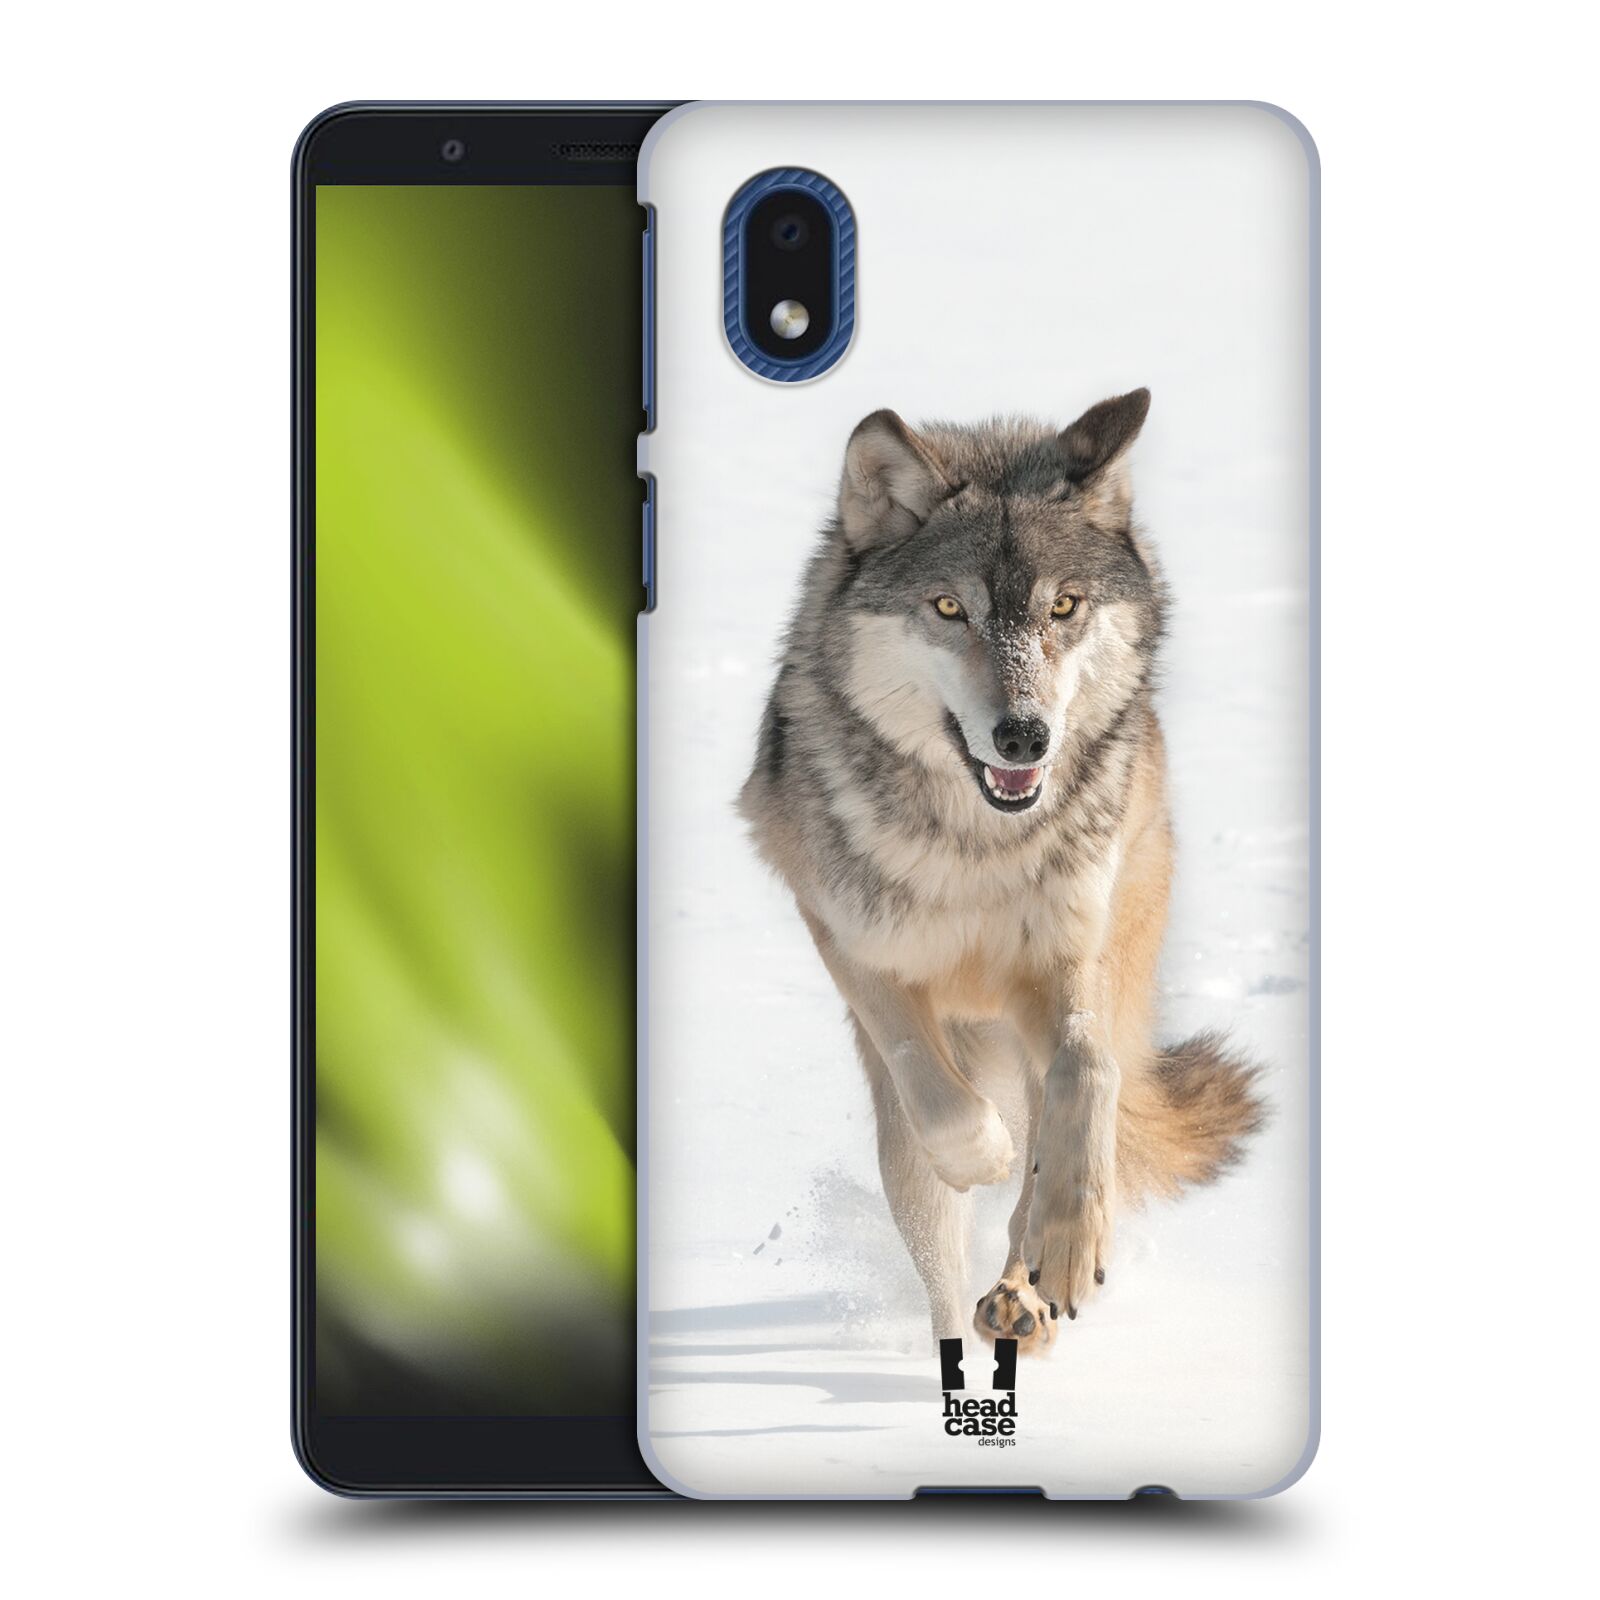 Zadní obal pro mobil Samsung Galaxy A01 CORE - HEAD CASE - Svět zvířat divoký vlk